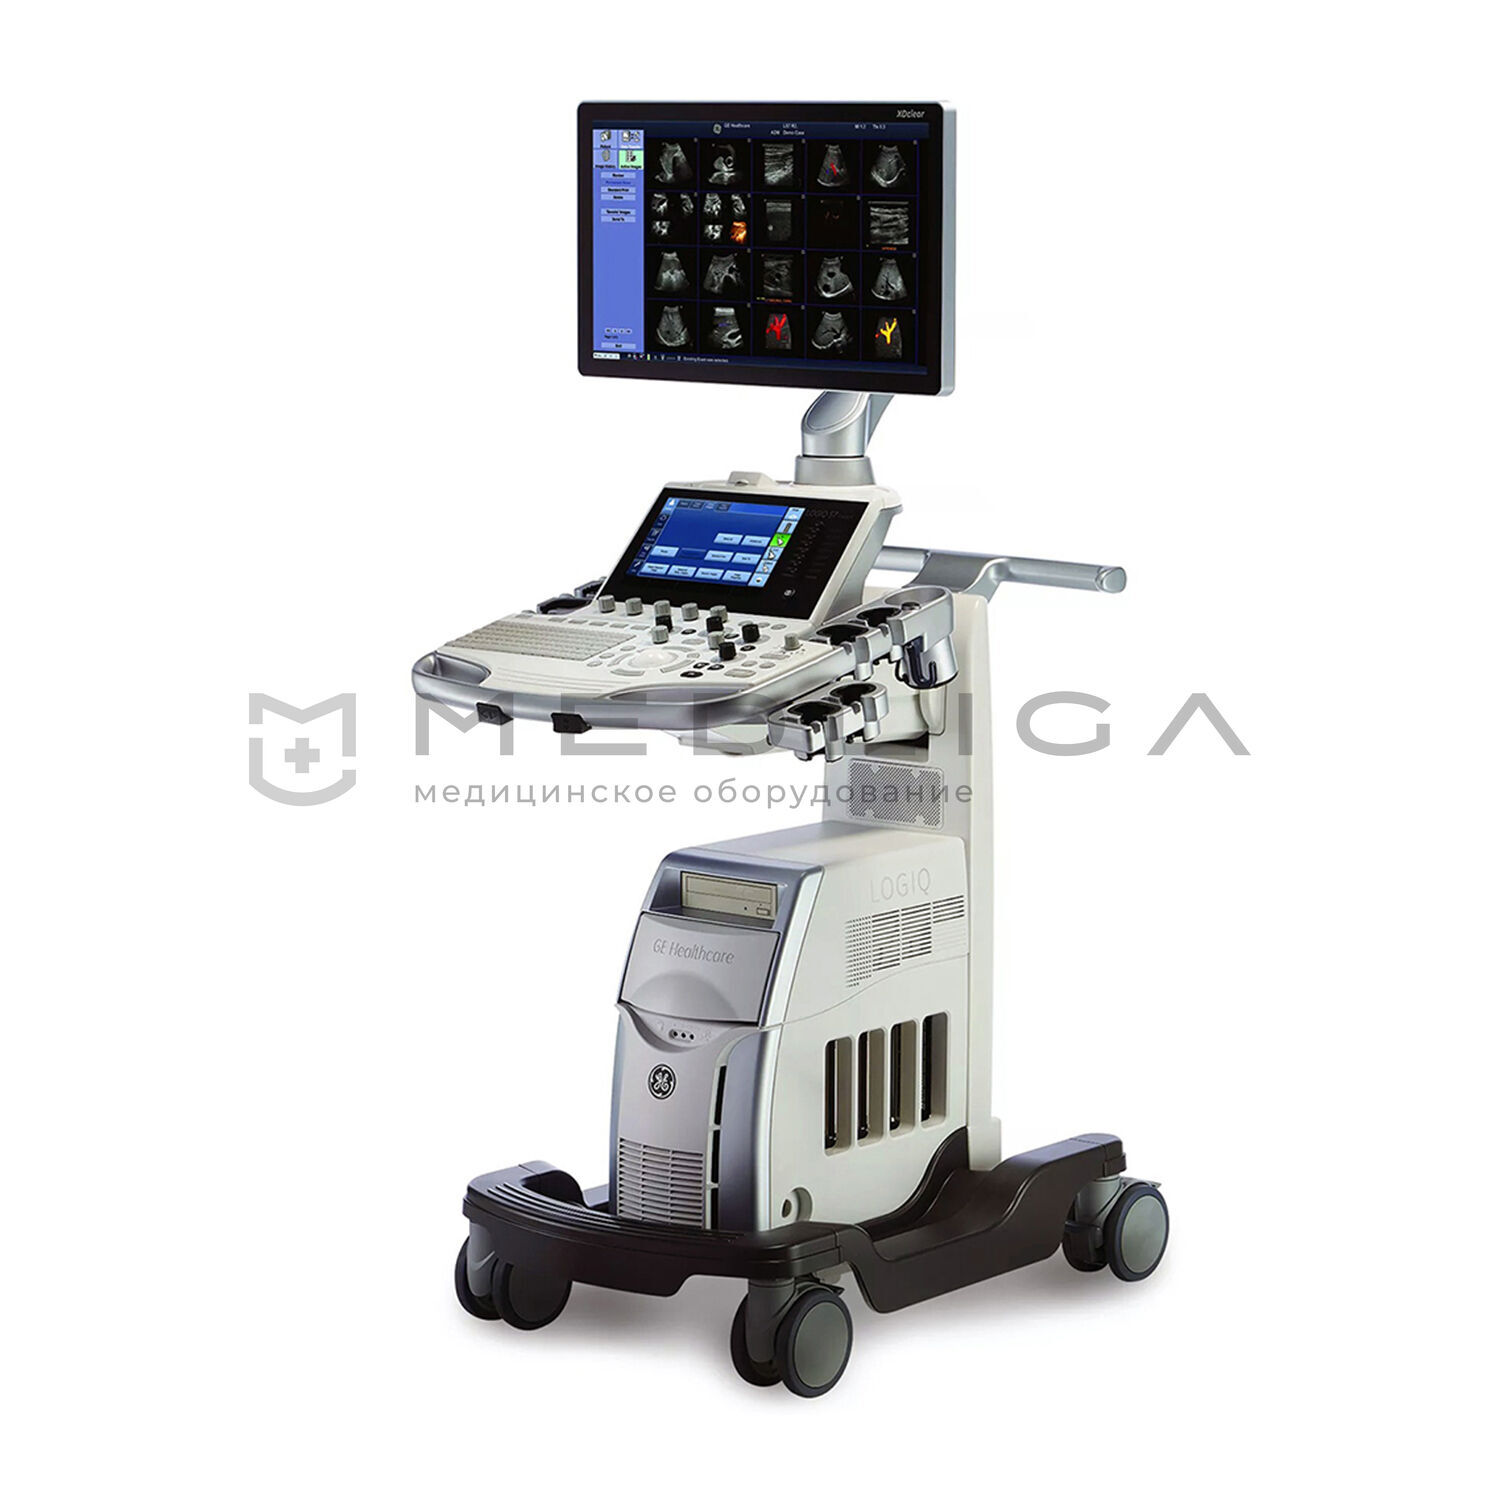 Ультразвуковая диагностическая система GE Healthcare LOGIQ S7 XDclear